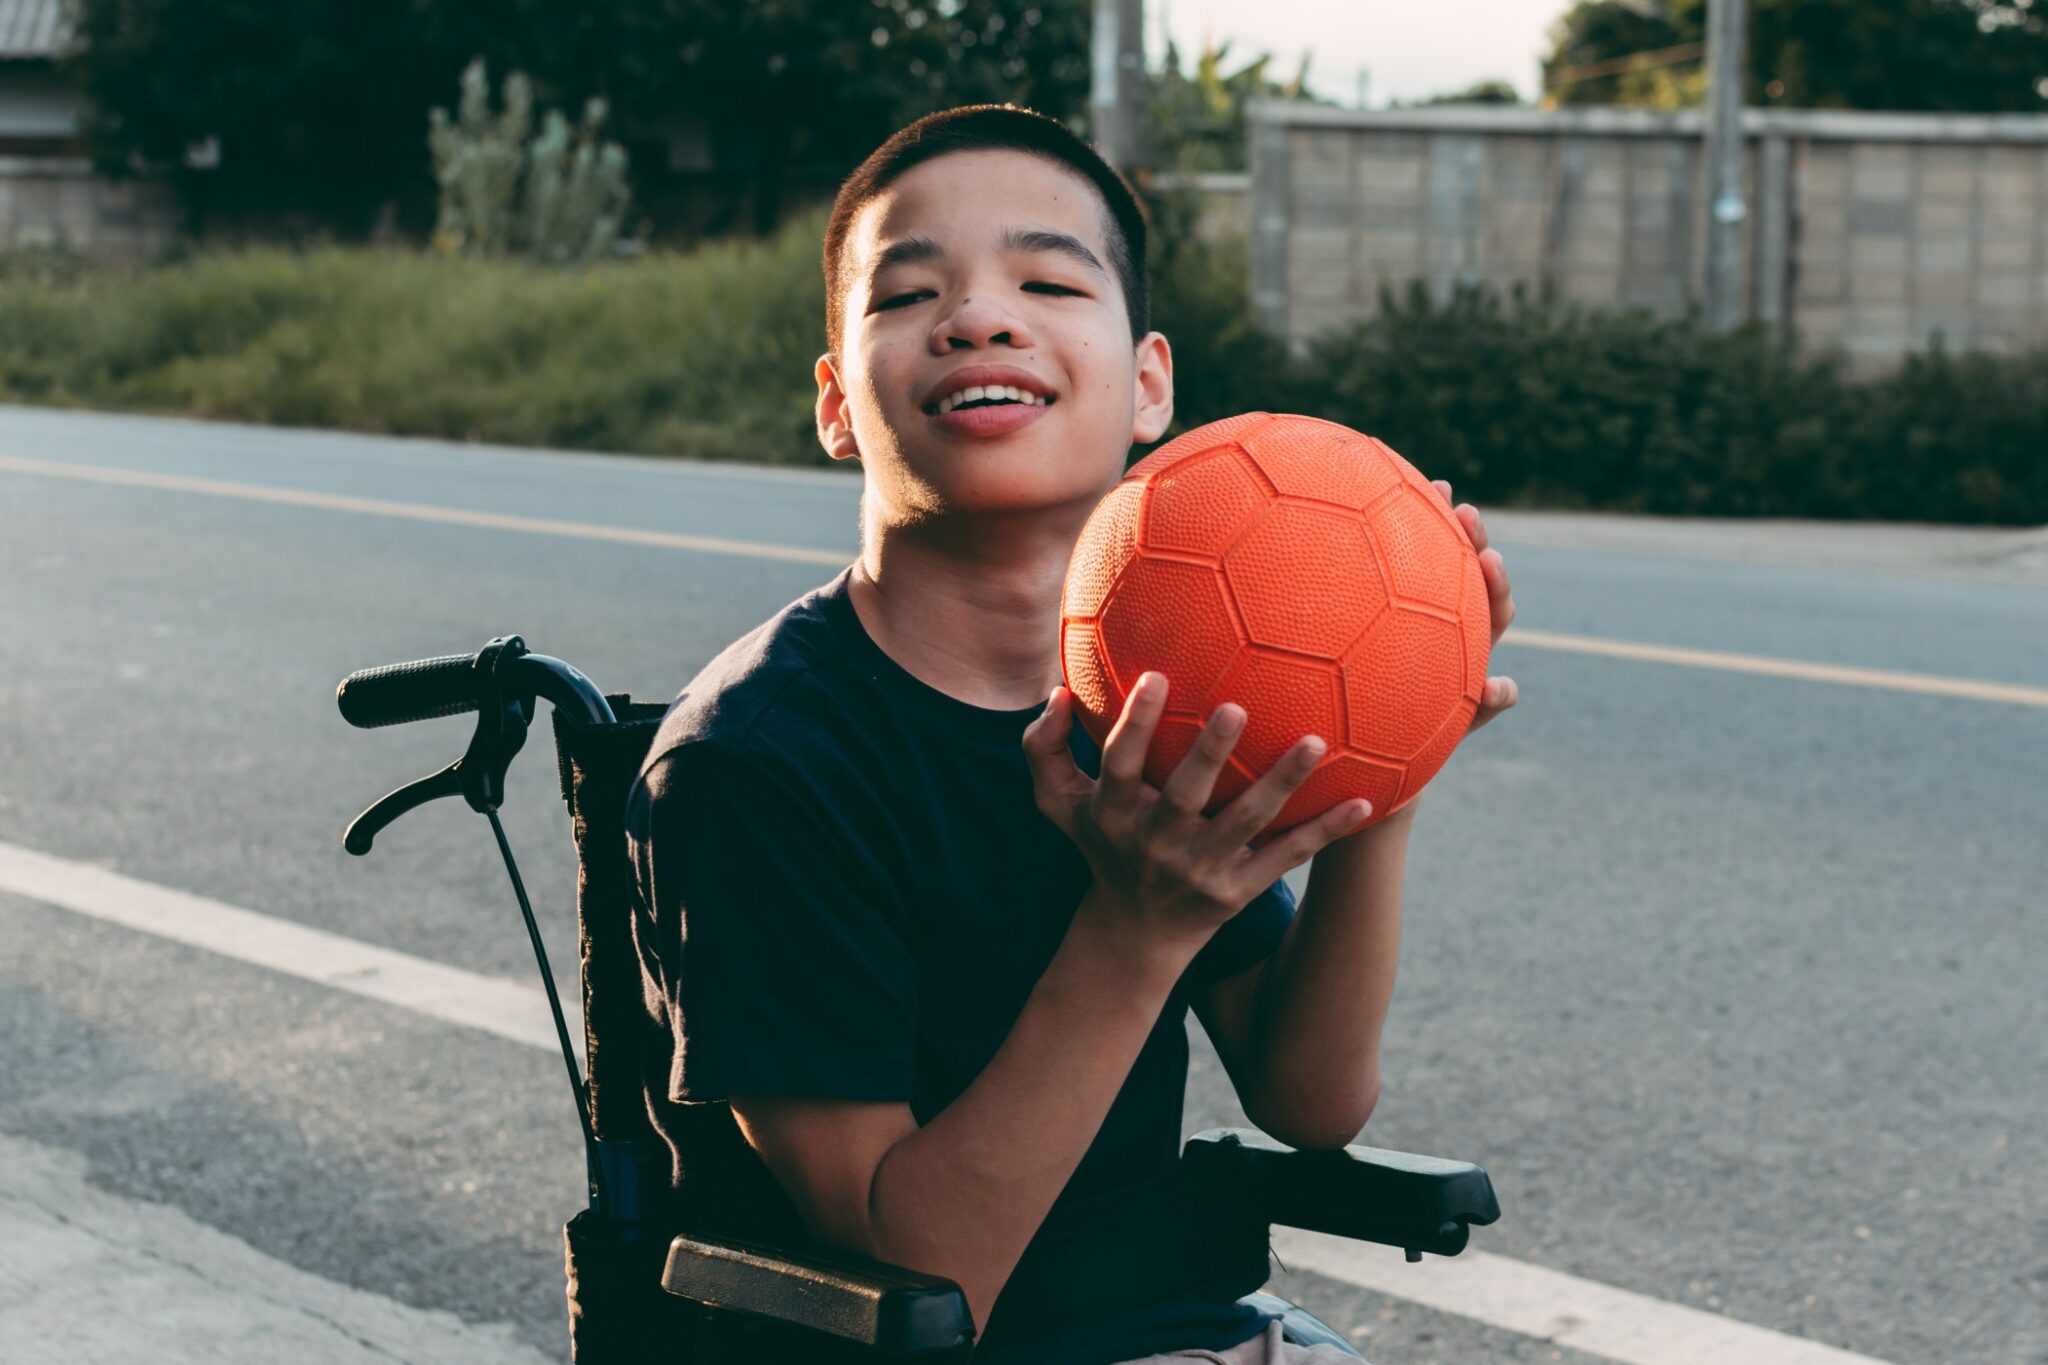 L’importance du sport pour les personnes handicapées